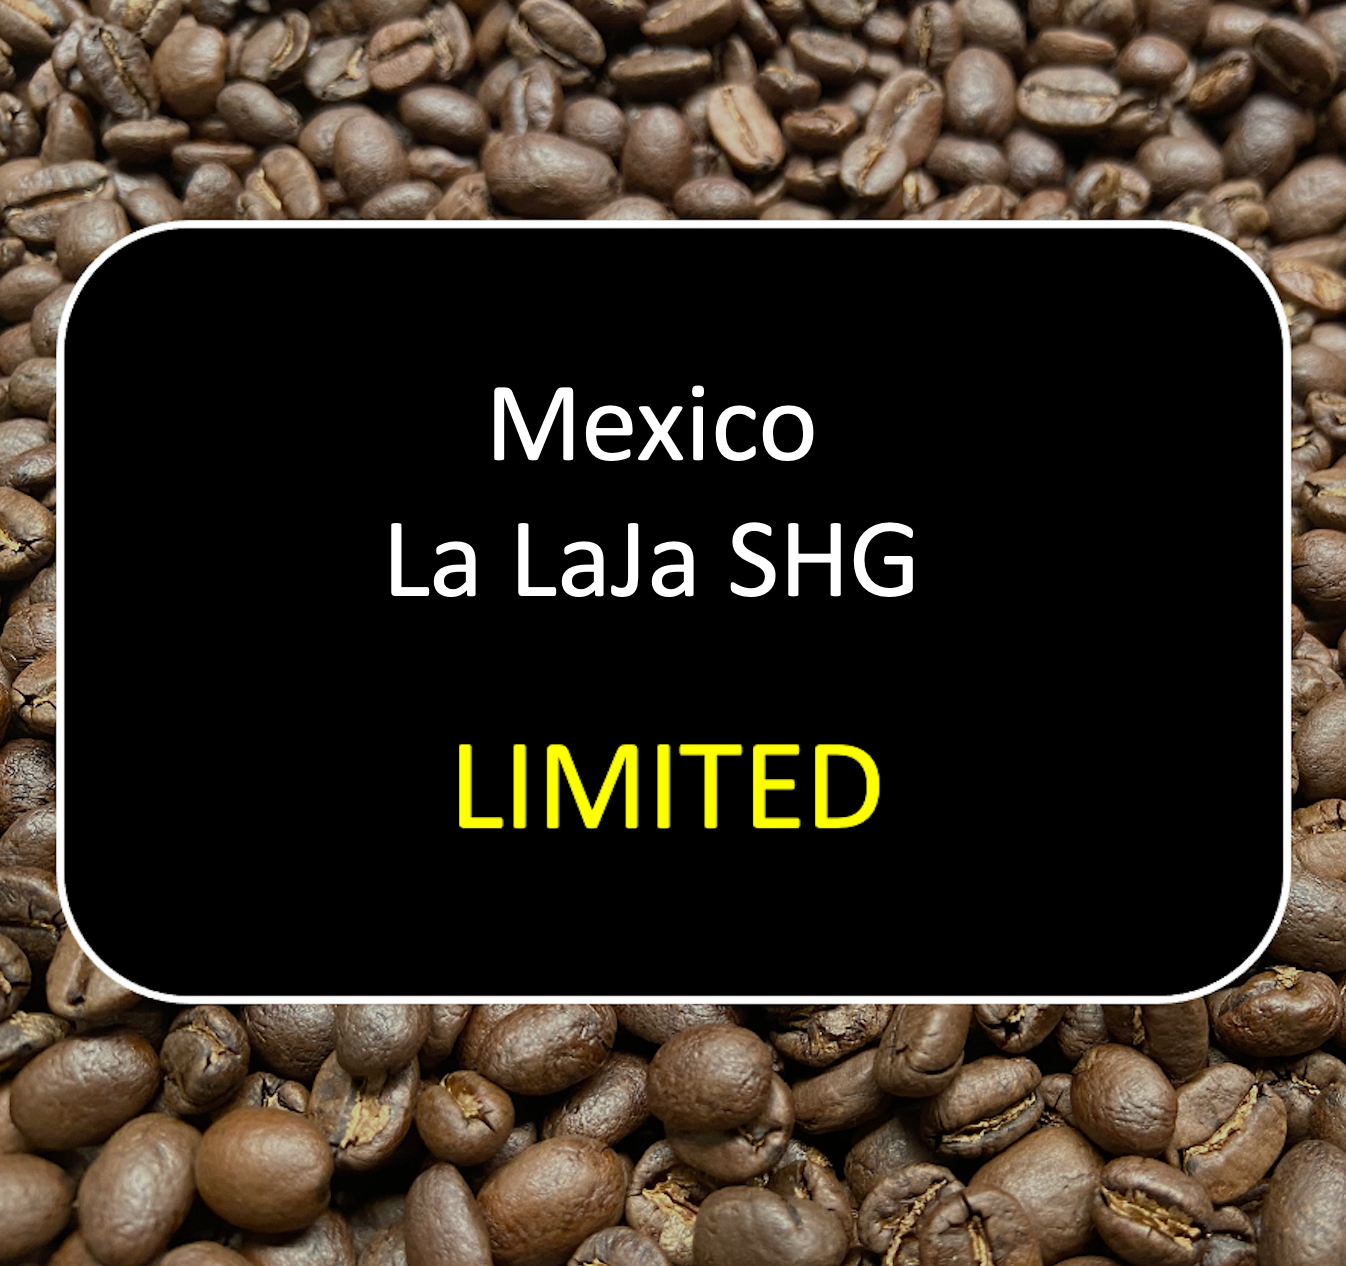 Mexico La LaJa SHG (Limited) - 12 oz